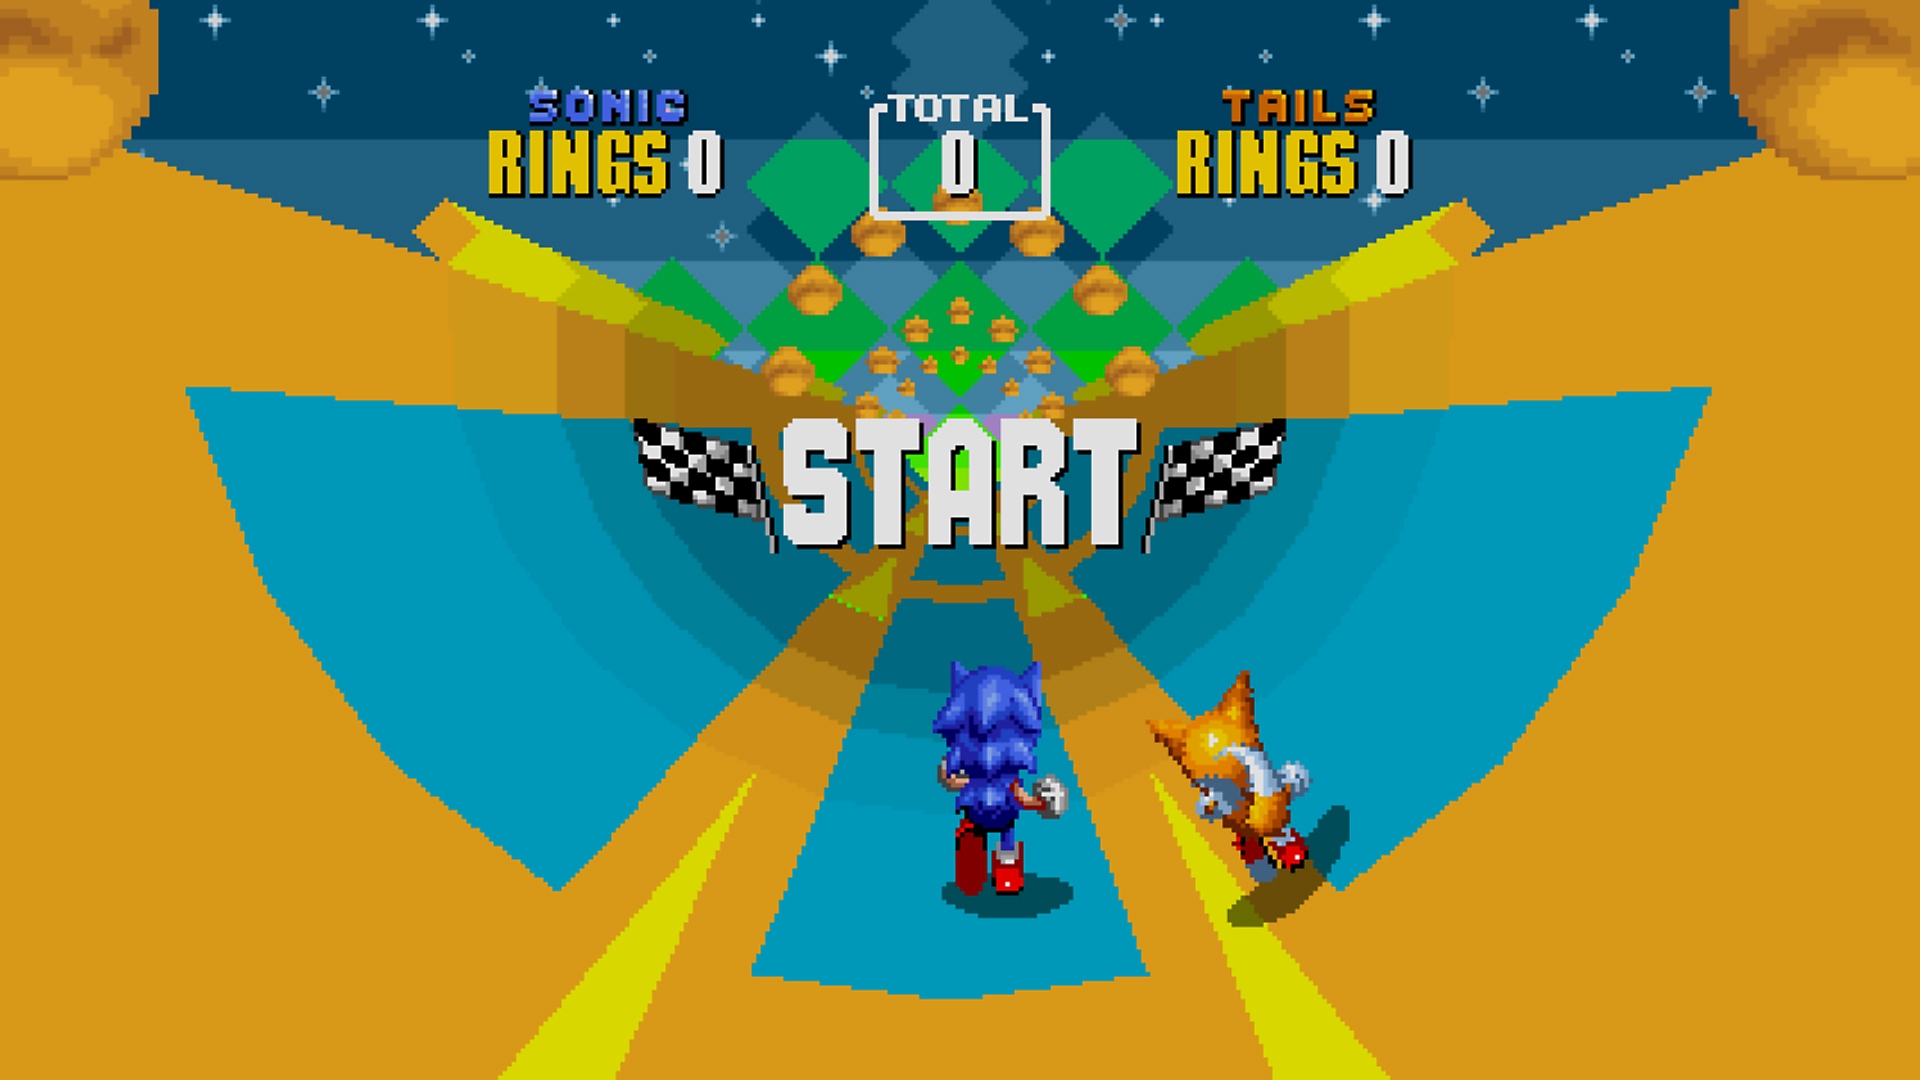 Sonic Origins – snímek obrazovky s postavami Sonica a Tailse probíhajícími úrovní